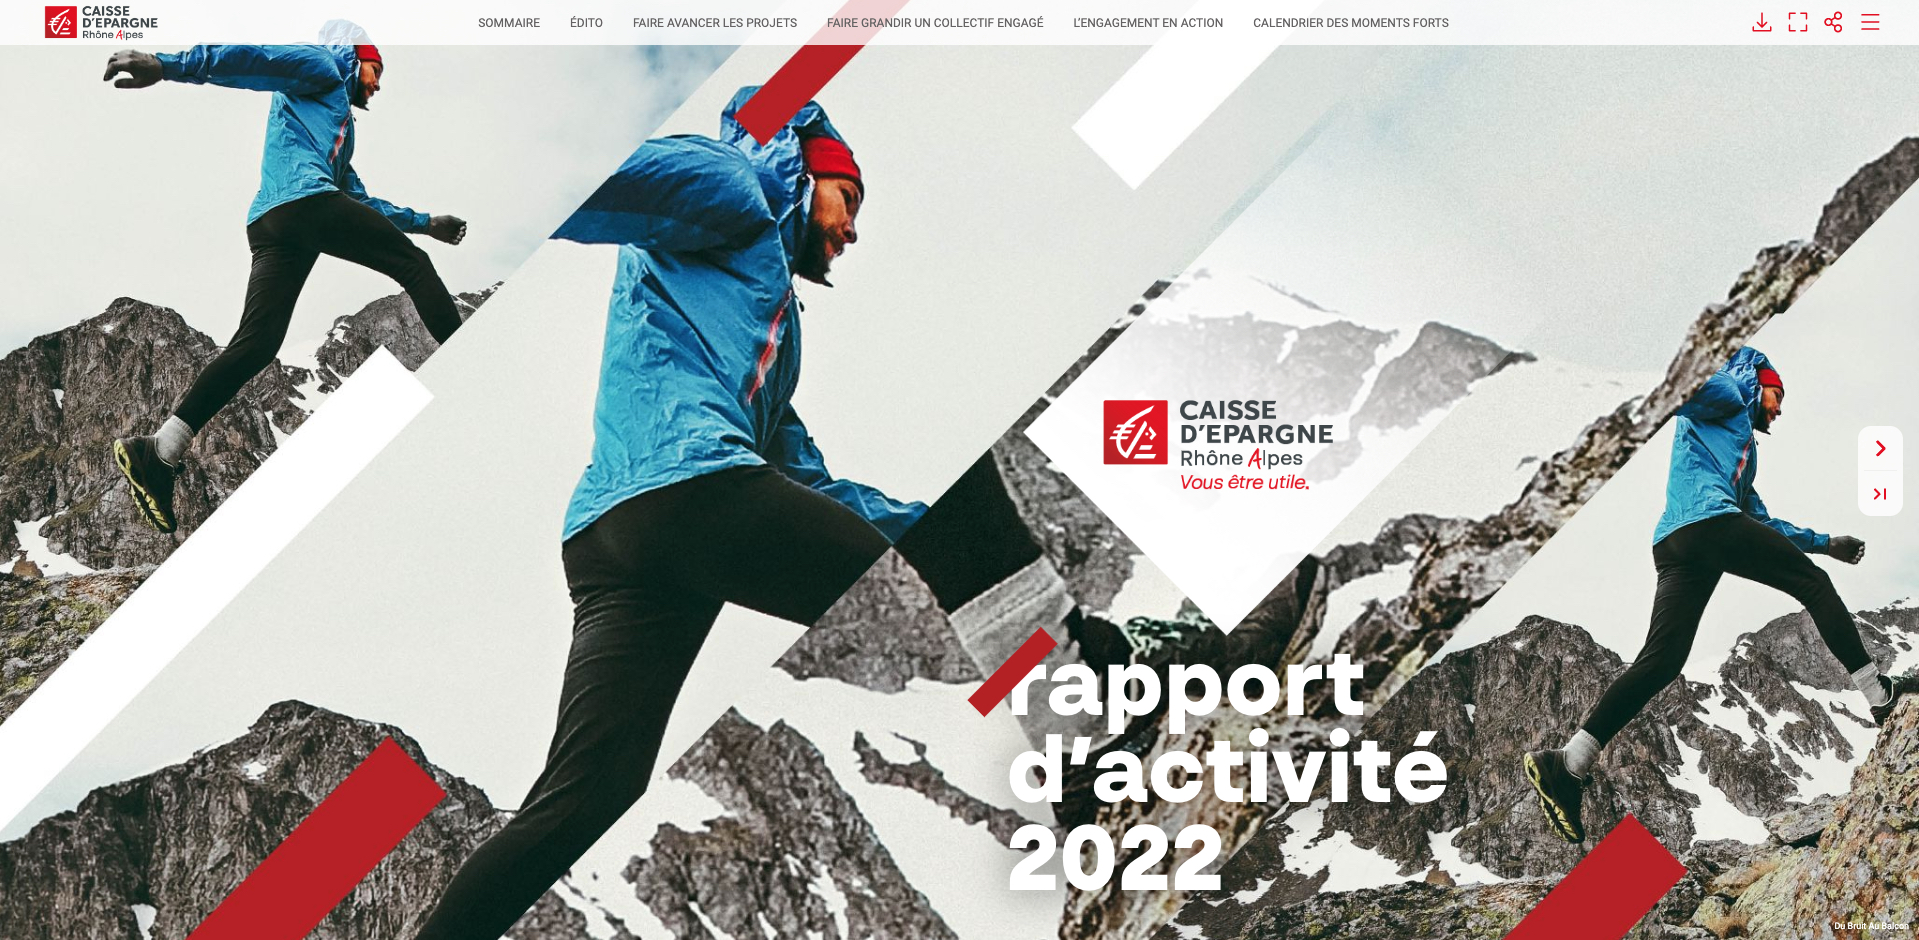 Couverture de la version électronique du rapport d'activité 2022 de la Caisse d'Épargne Rhône-Alpes.